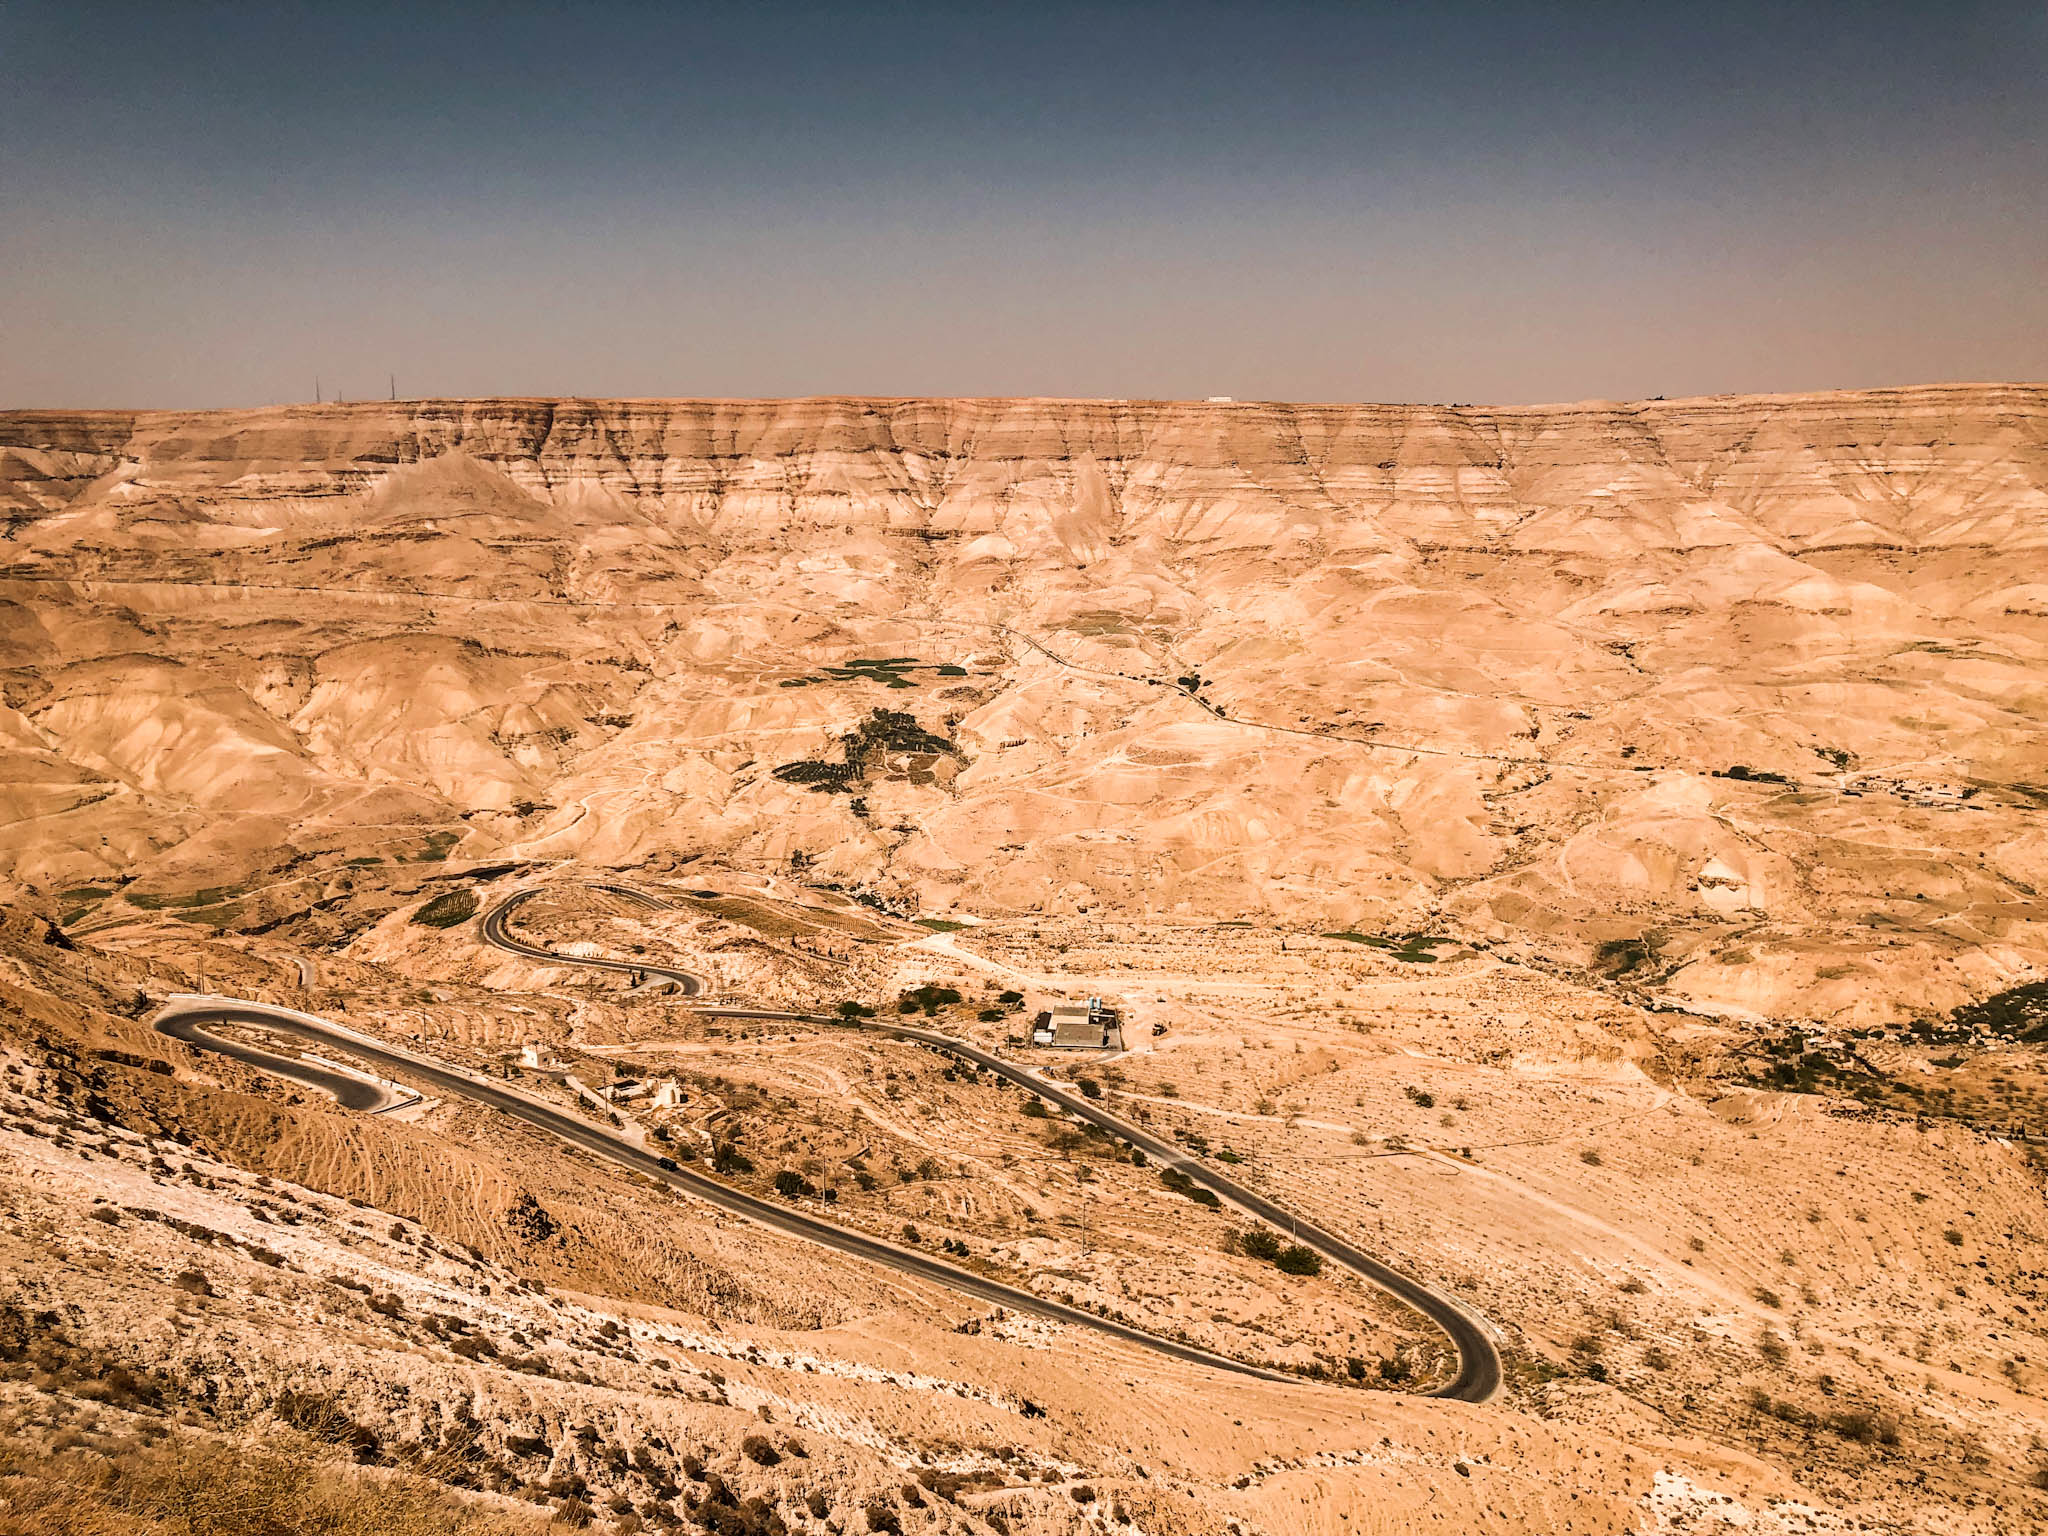 Jordania samochodem - trasa poza głównym szlakiem